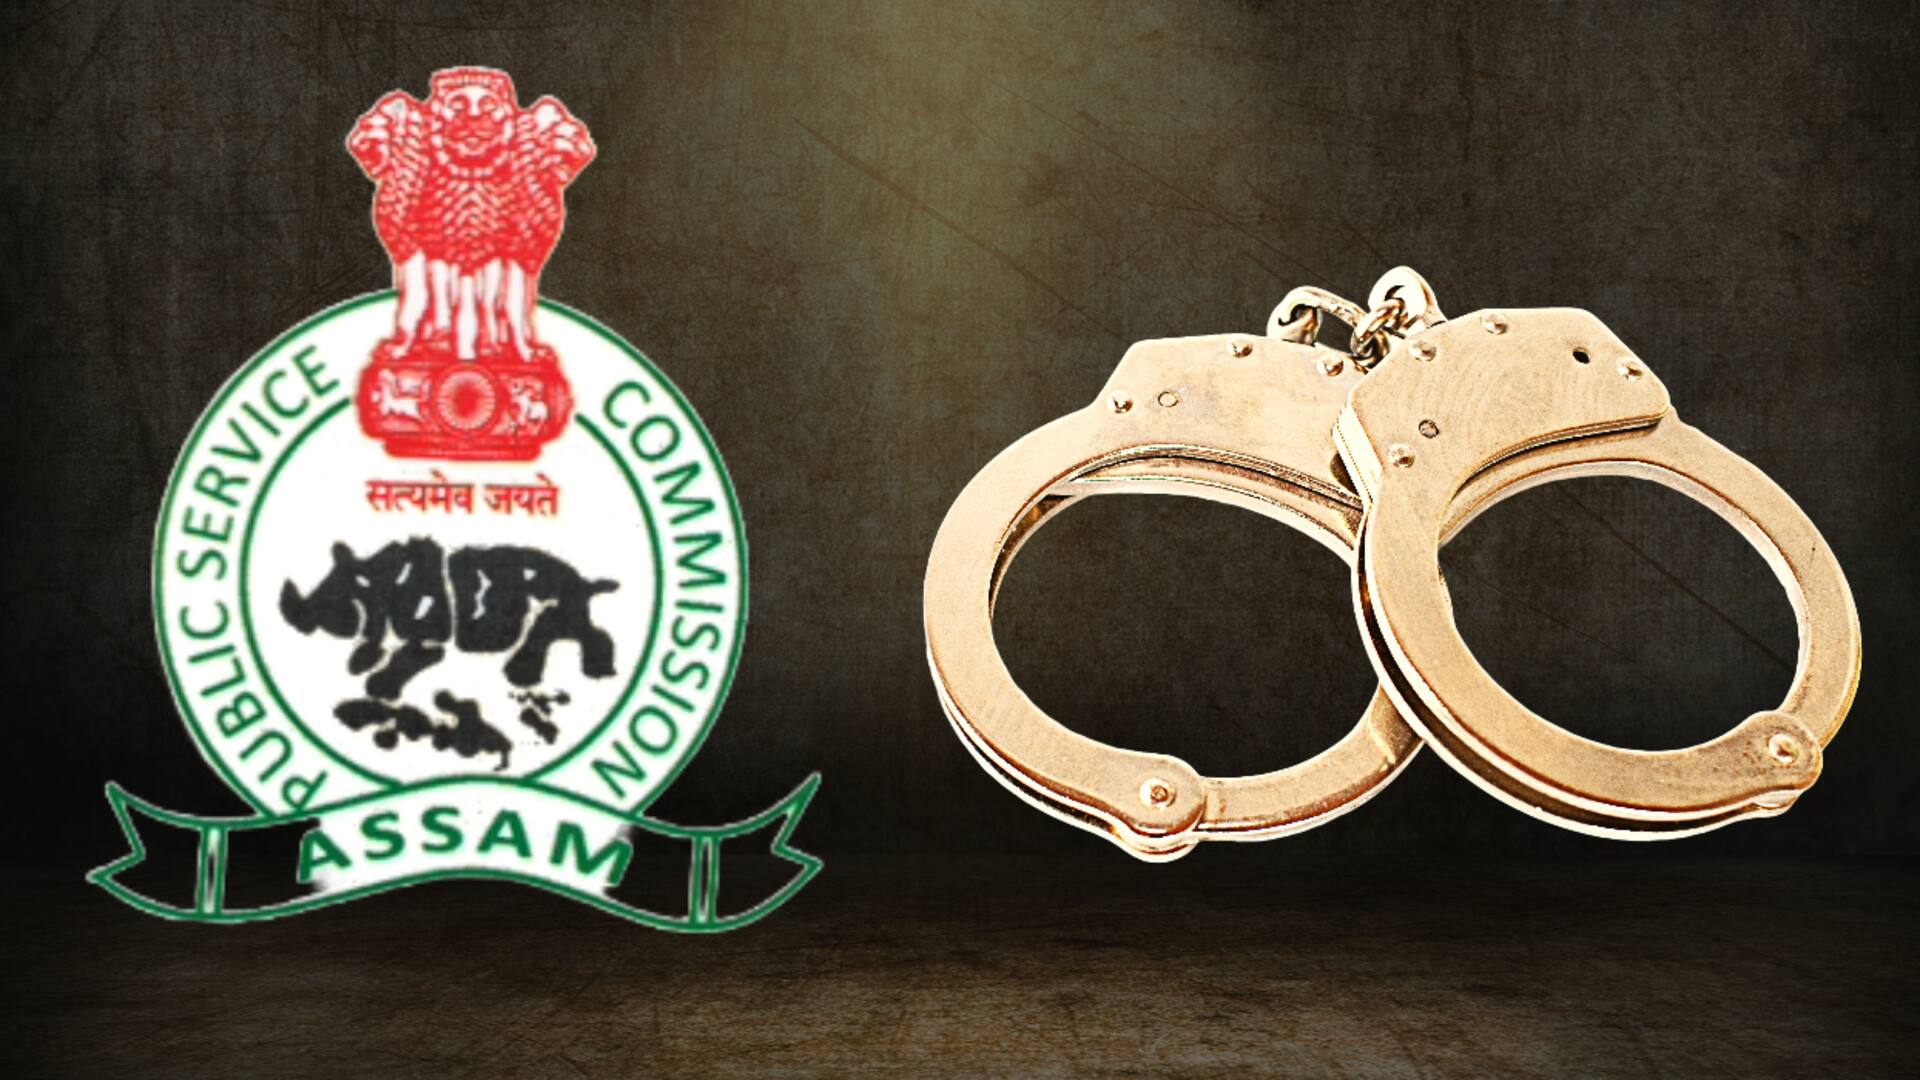 असम लोक सेवा आयोग की भर्ती में घोटाला, SIT ने 2 सिविल सेवकों को गिरफ्तार किया